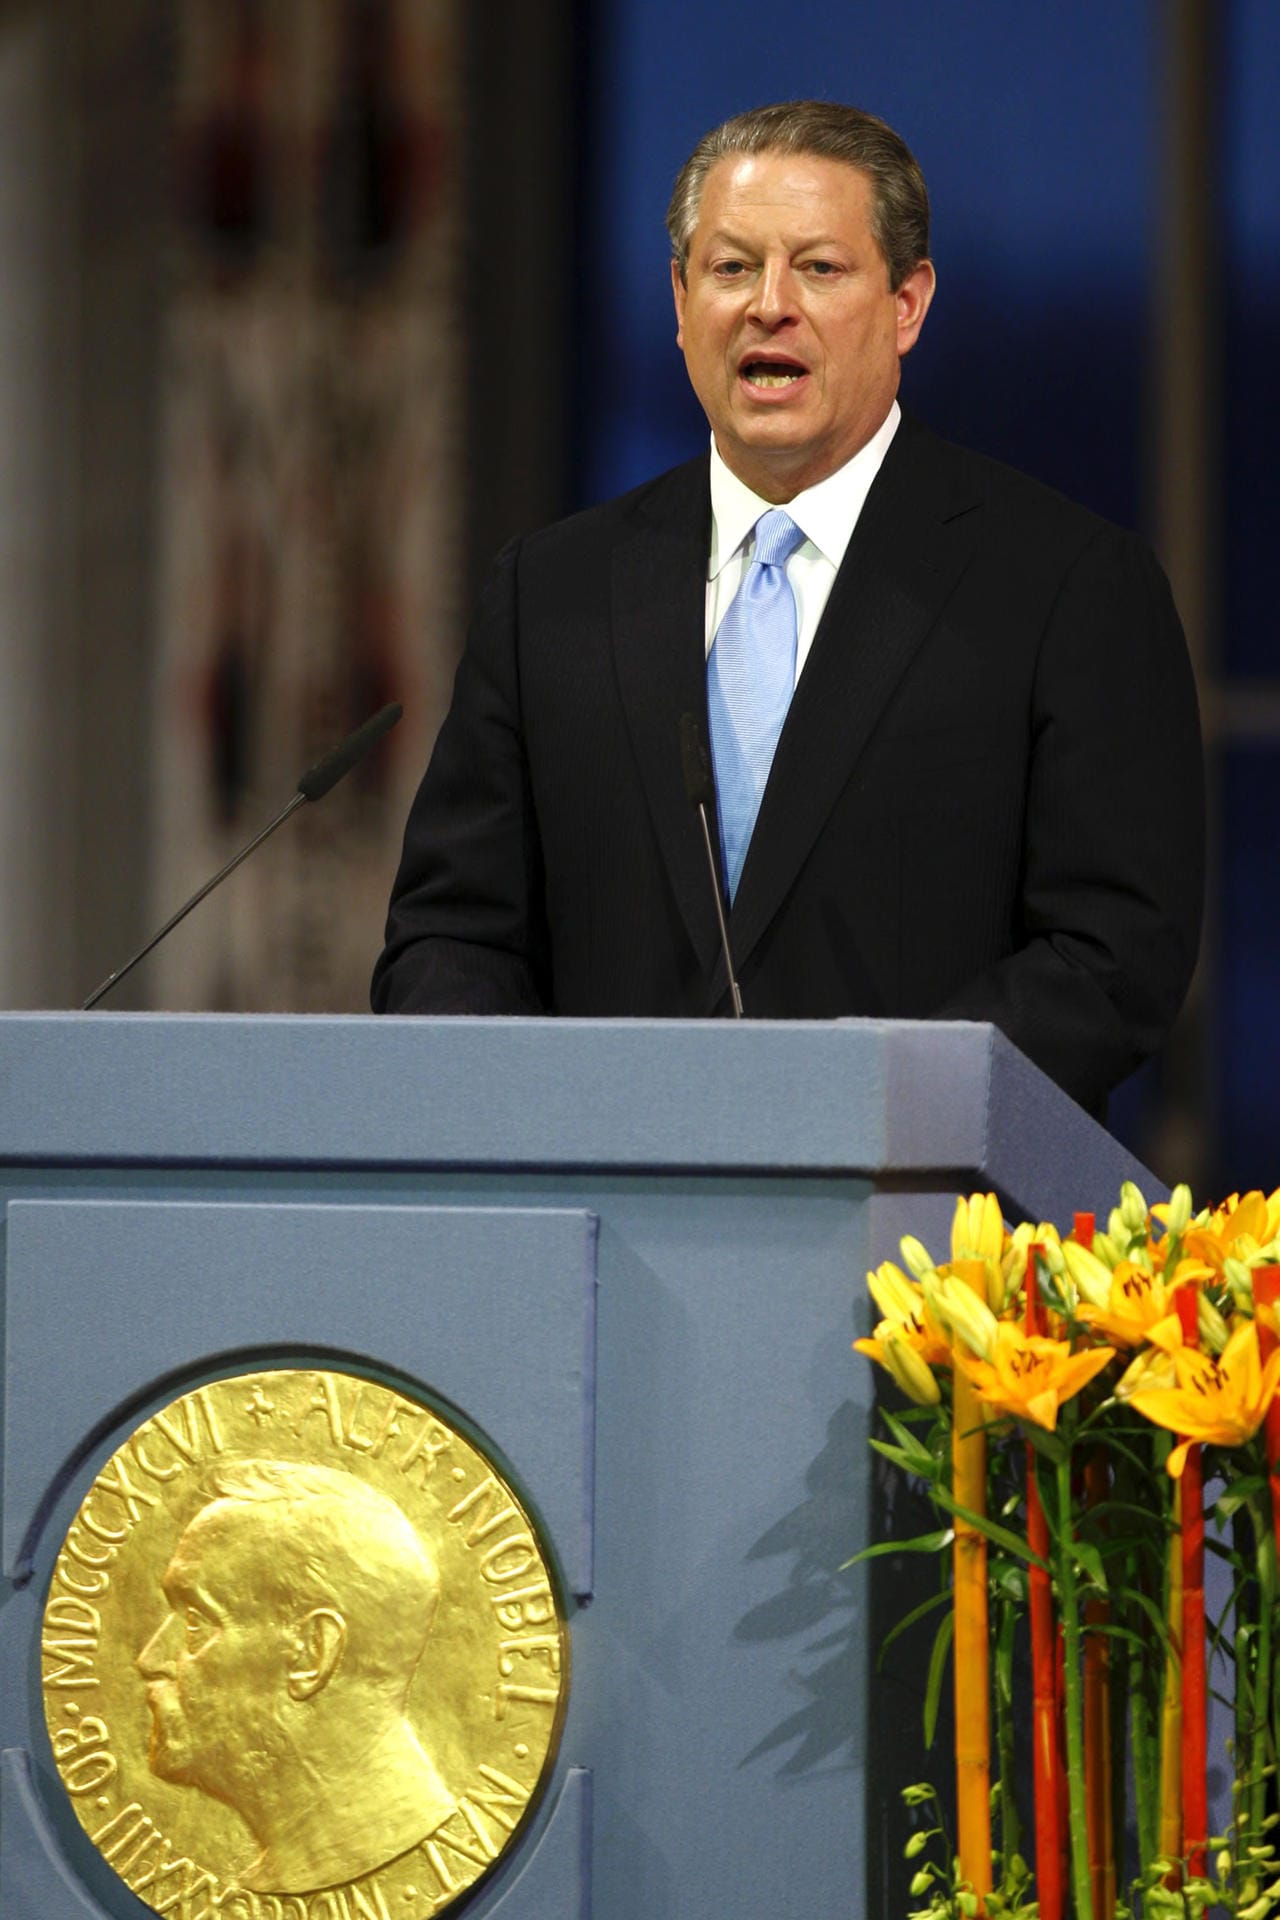 Al Gore, ehemaliger Vizepräsident der Vereinigten Staaten, teilt sich die Auszeichnung mit dem Weltklimarat. Der Preis wird für ihre Bemühungen, ein besseres Verständnis für die von Menschen verursachten Klimaveränderungen zu entwickeln und zu verbreiten, und dafür, dass sie die Grundlagen für Maßnahmen gegen den Klimawandel gelegt haben, vergeben.